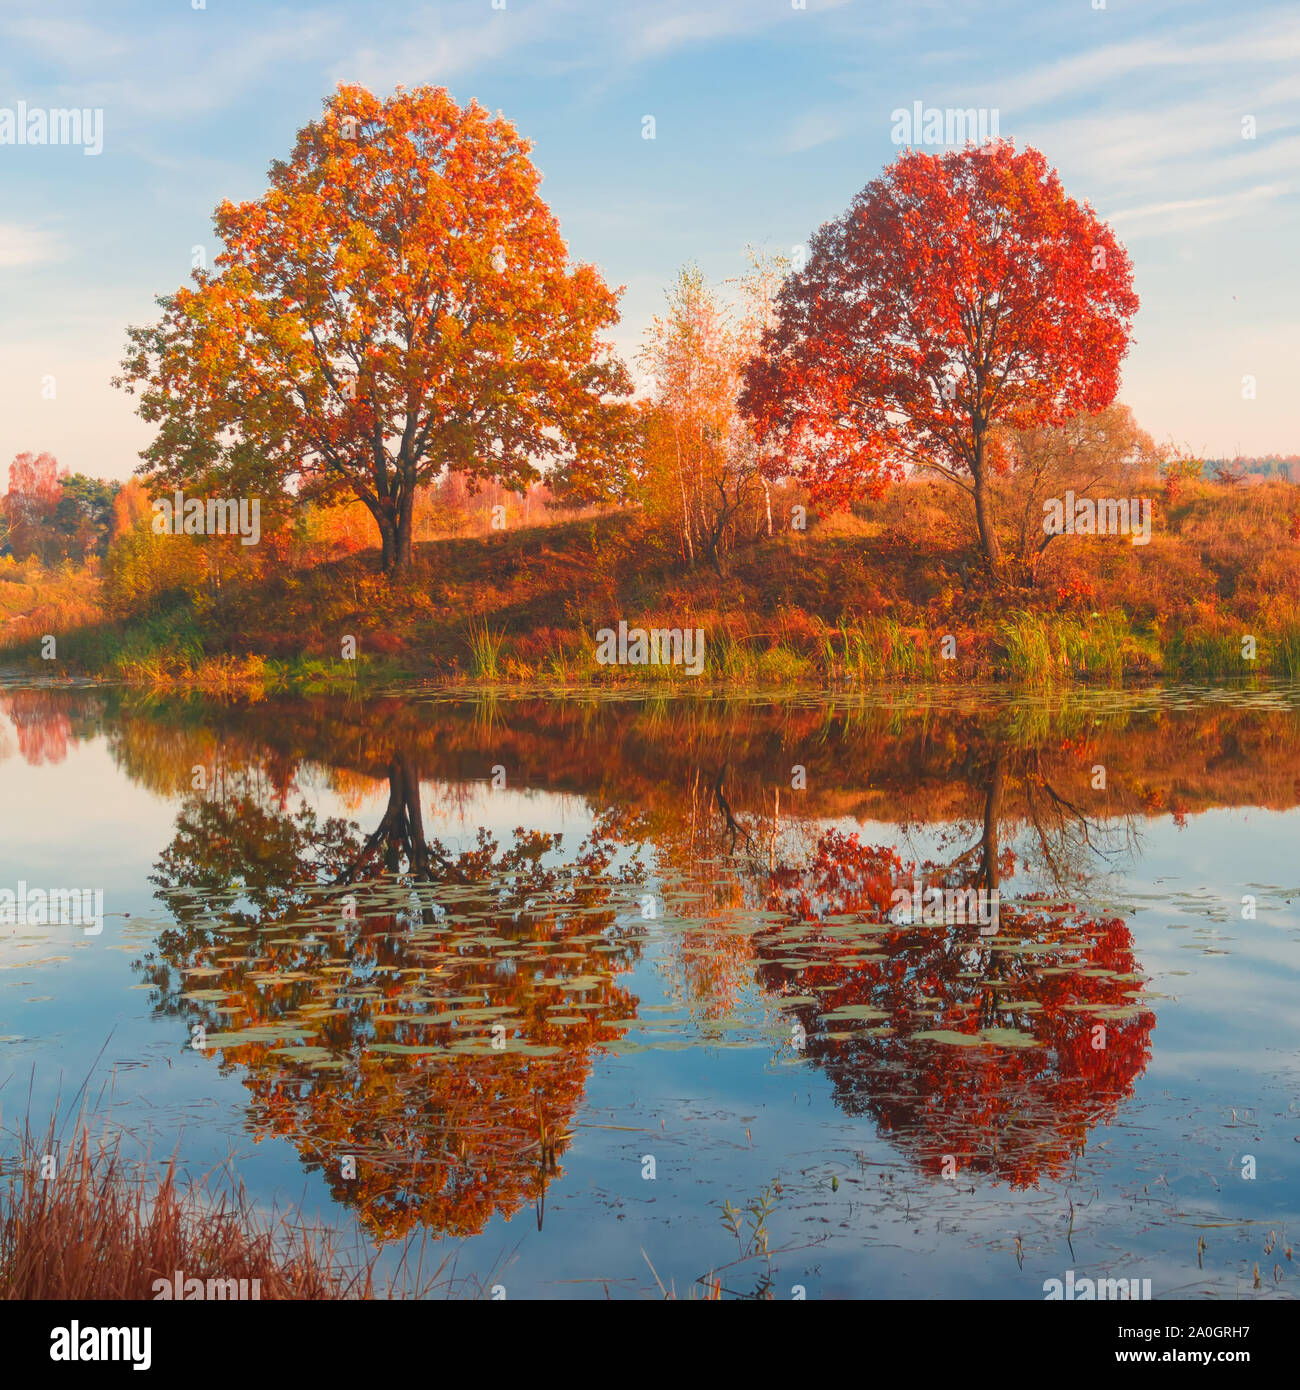 Amazing autumn landscape, forest lake with reflection. Stock Photo